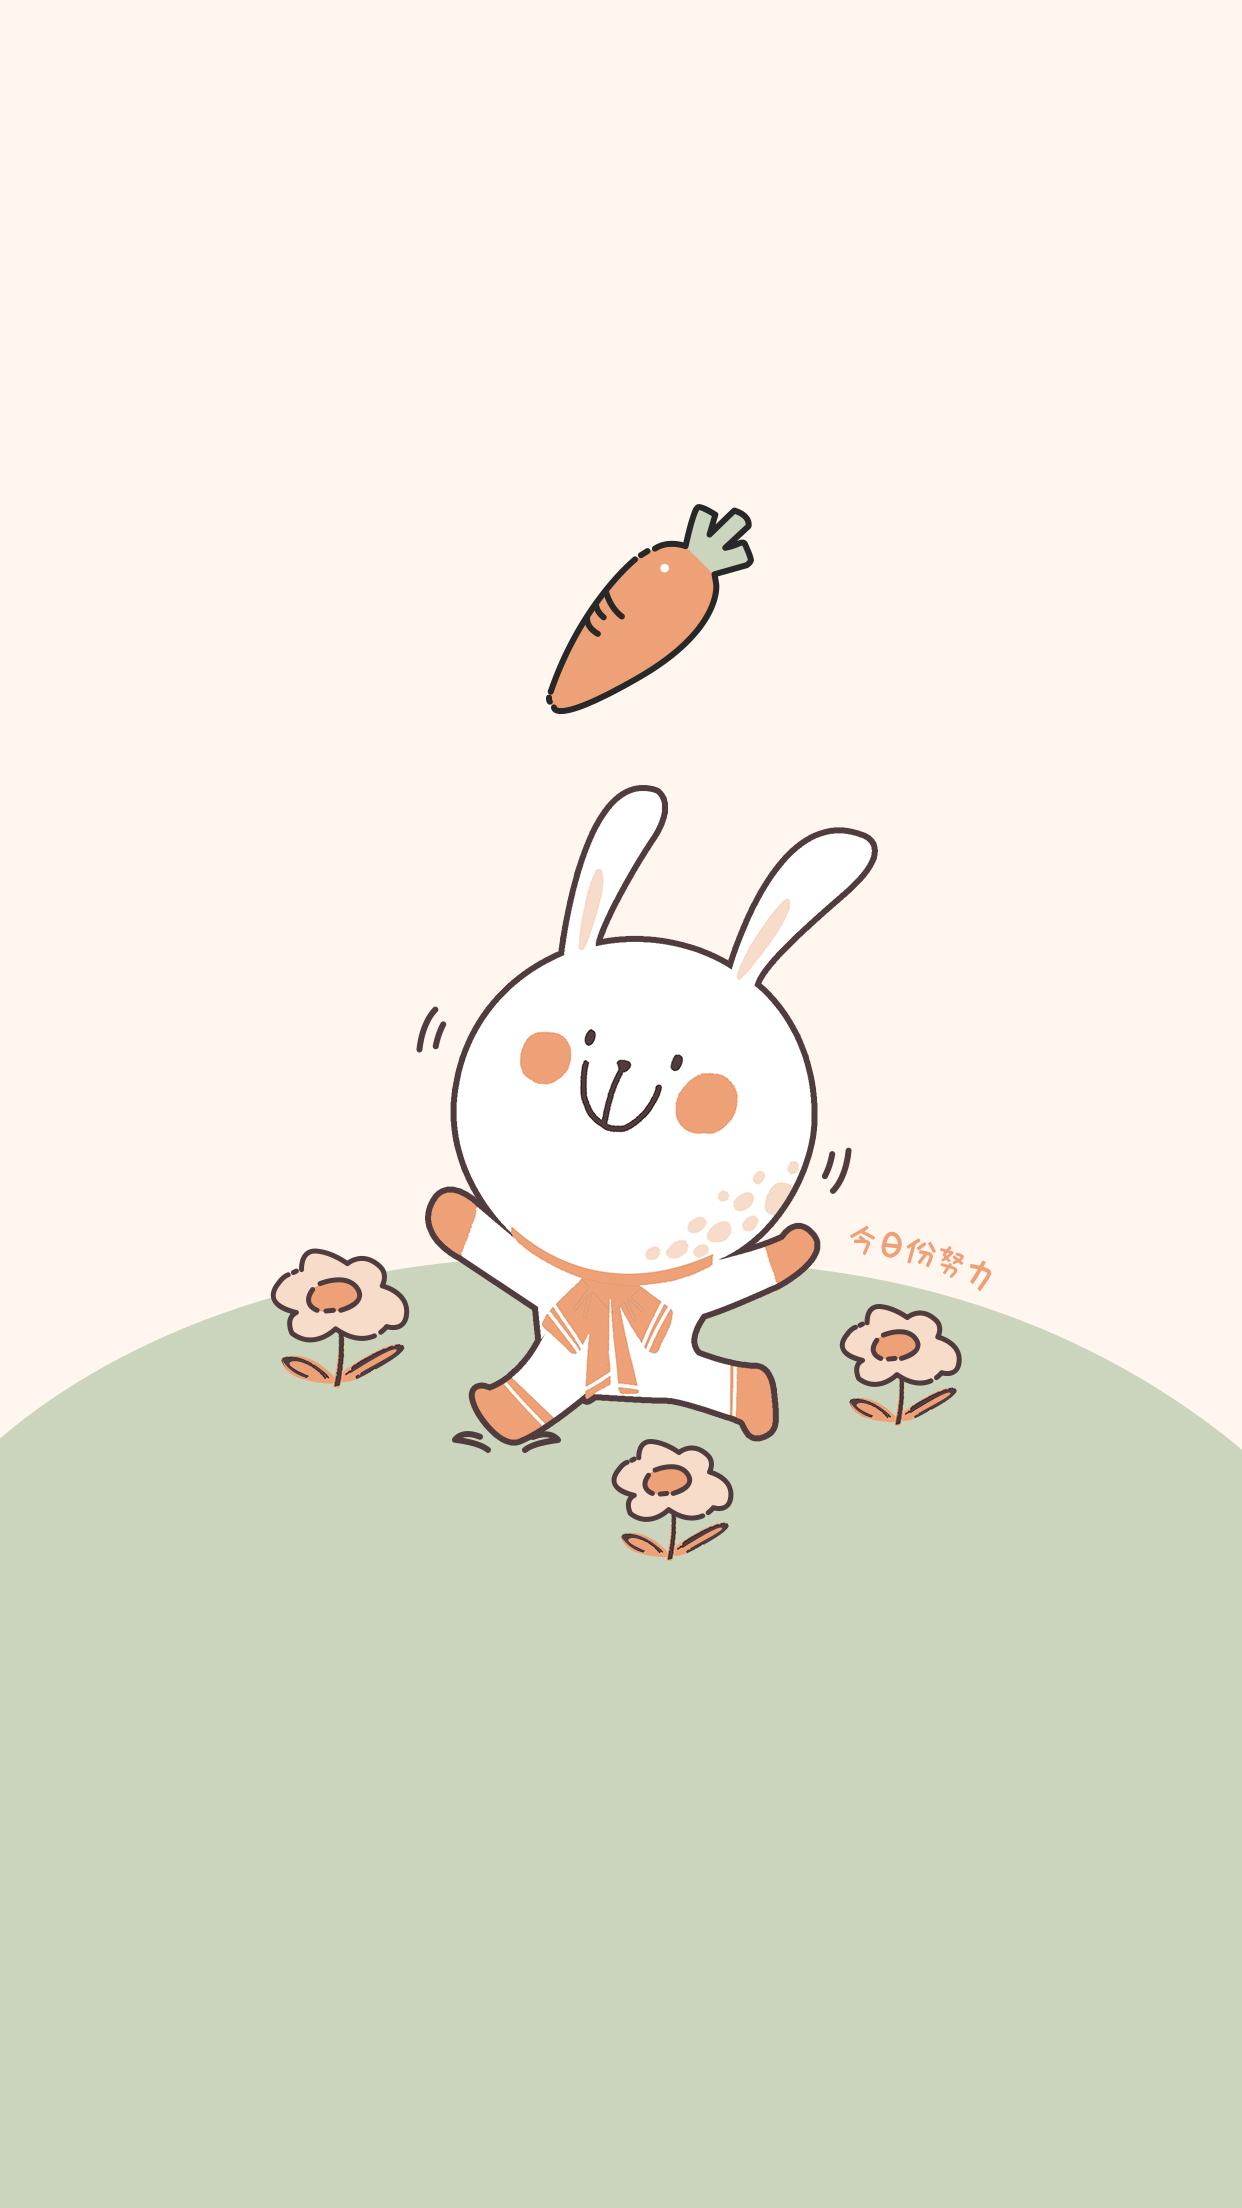 兔子爱吃胡萝卜(动物静态壁纸) - 静态壁纸下载 - 元气壁纸